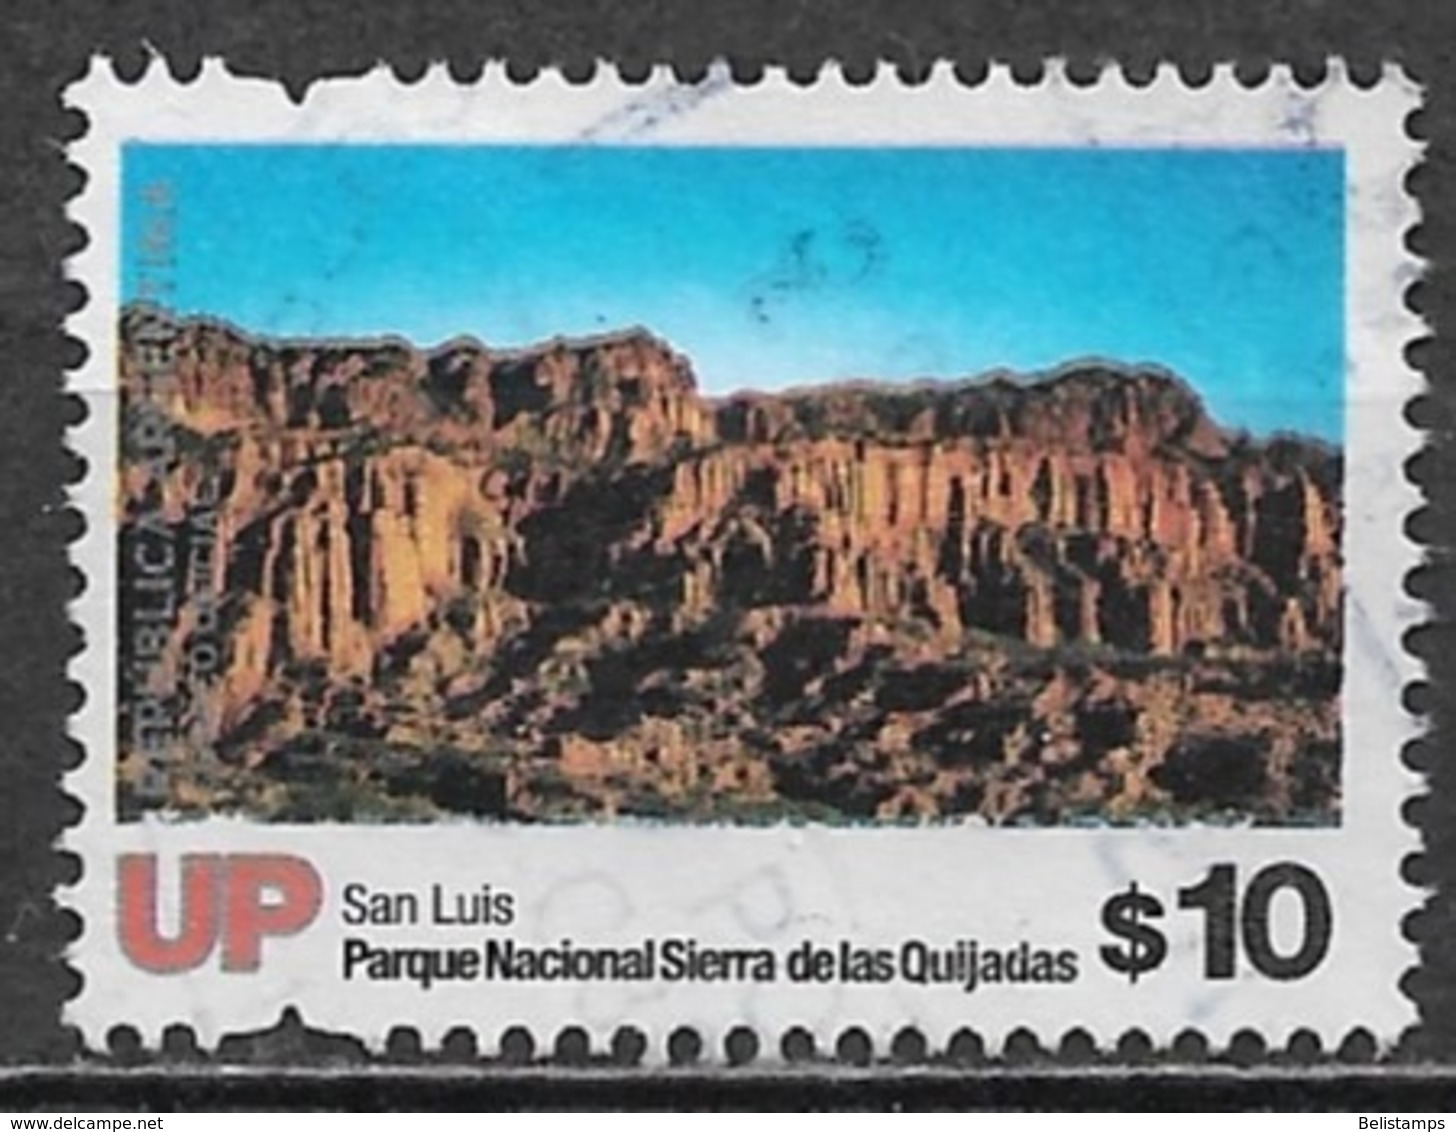 Argentina 2019. Scott #2878 (U) Sierra De Las Quijadas National Park, San Luis Province - Usati